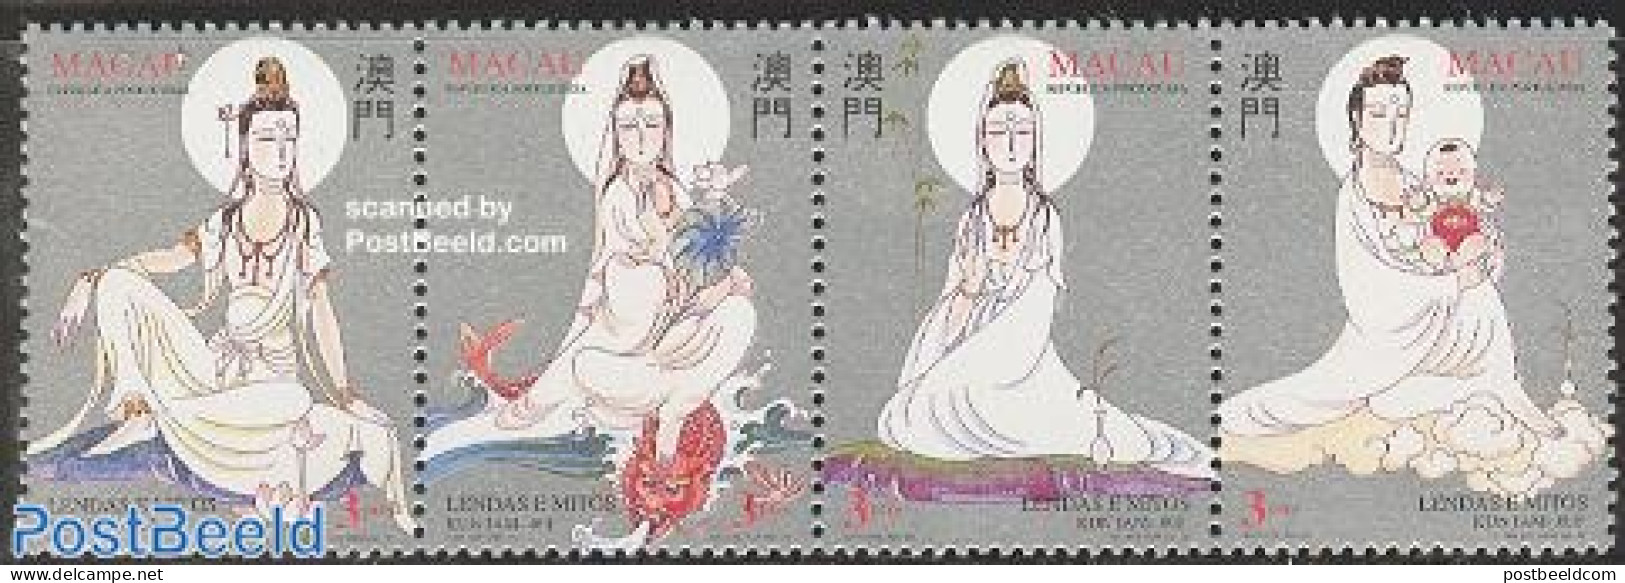 Macao 1995 Legends & Myths 4v [:::] Or [+], Mint NH - Unused Stamps